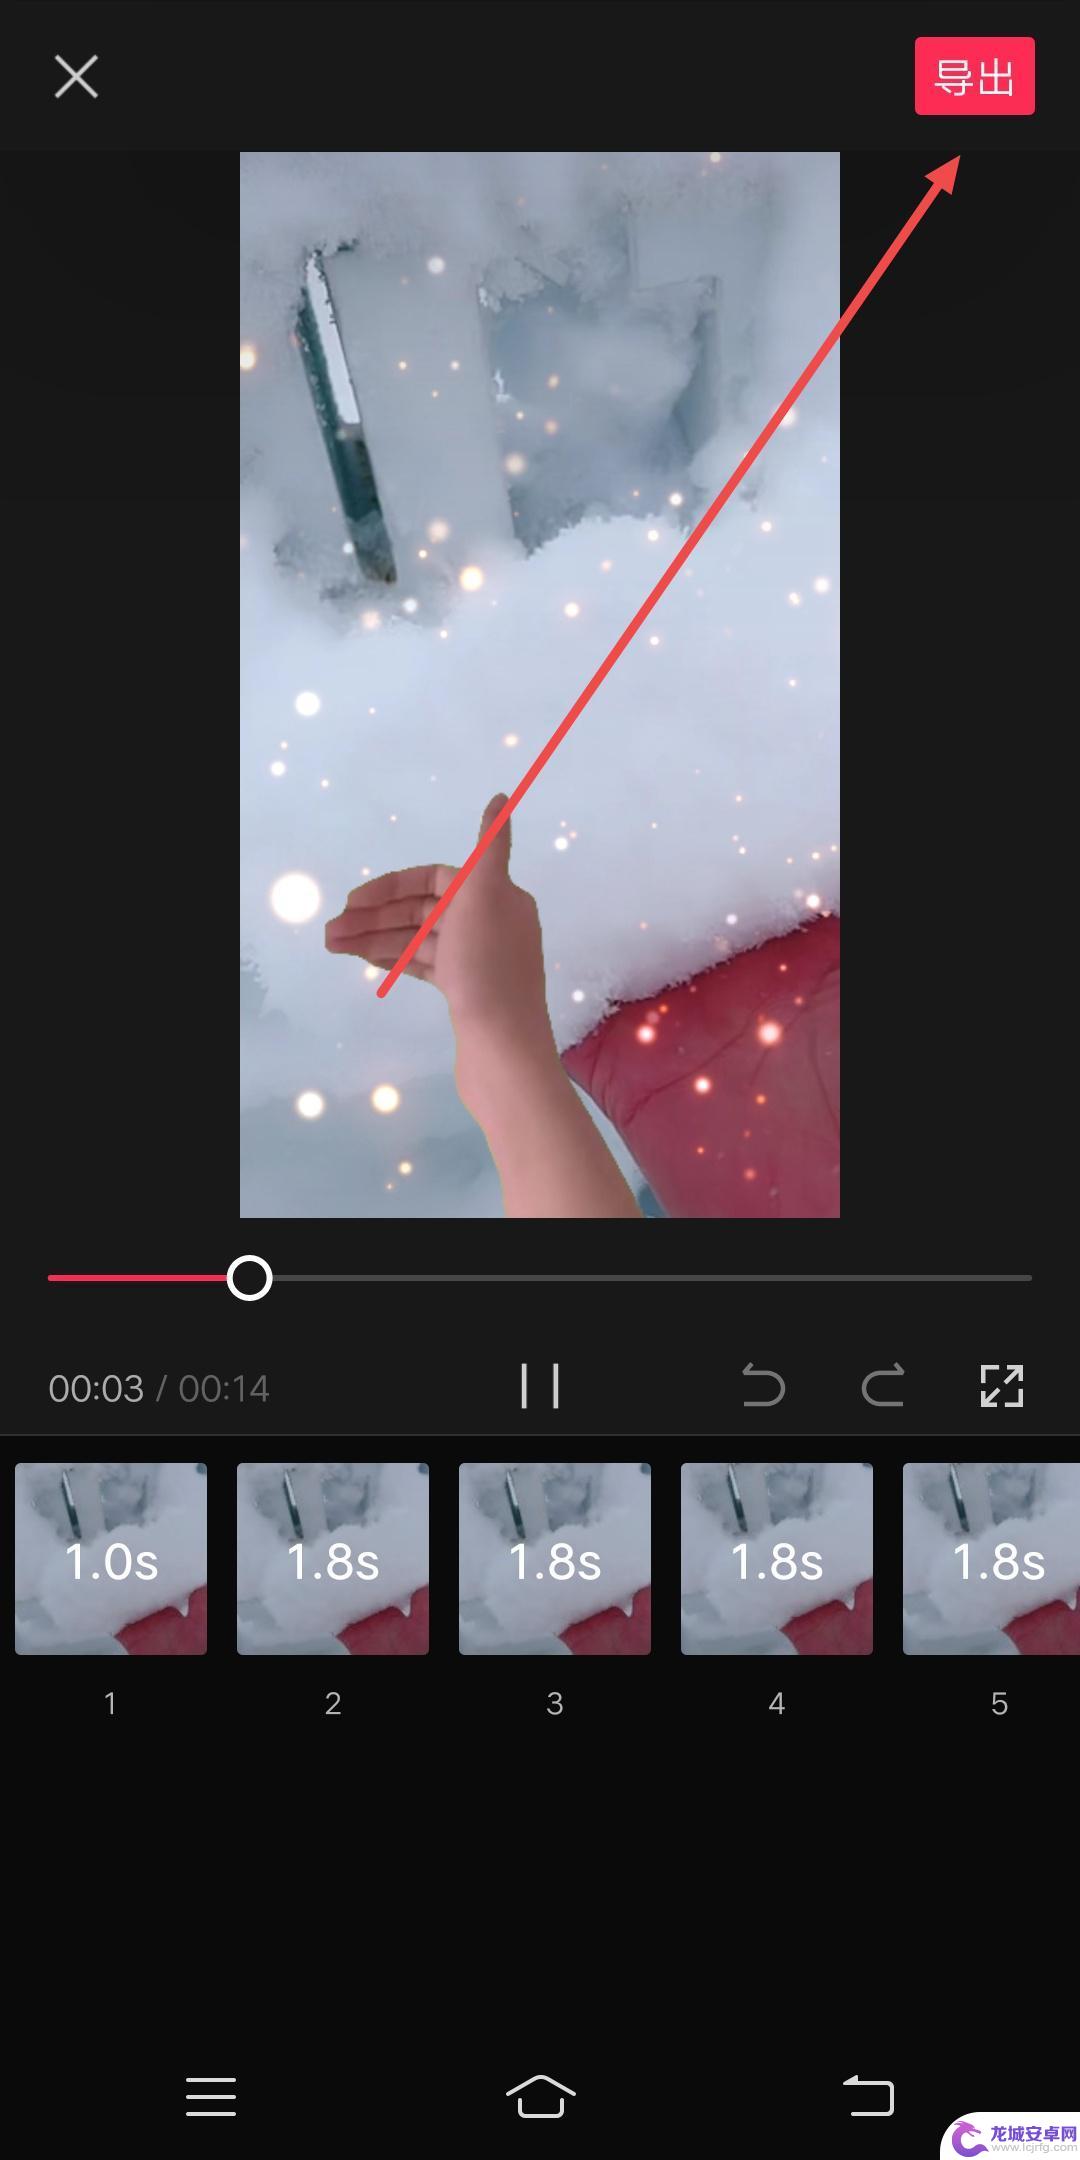 发抖音怎么设置照片可以划屏 抖音视频图片滑动怎么制作